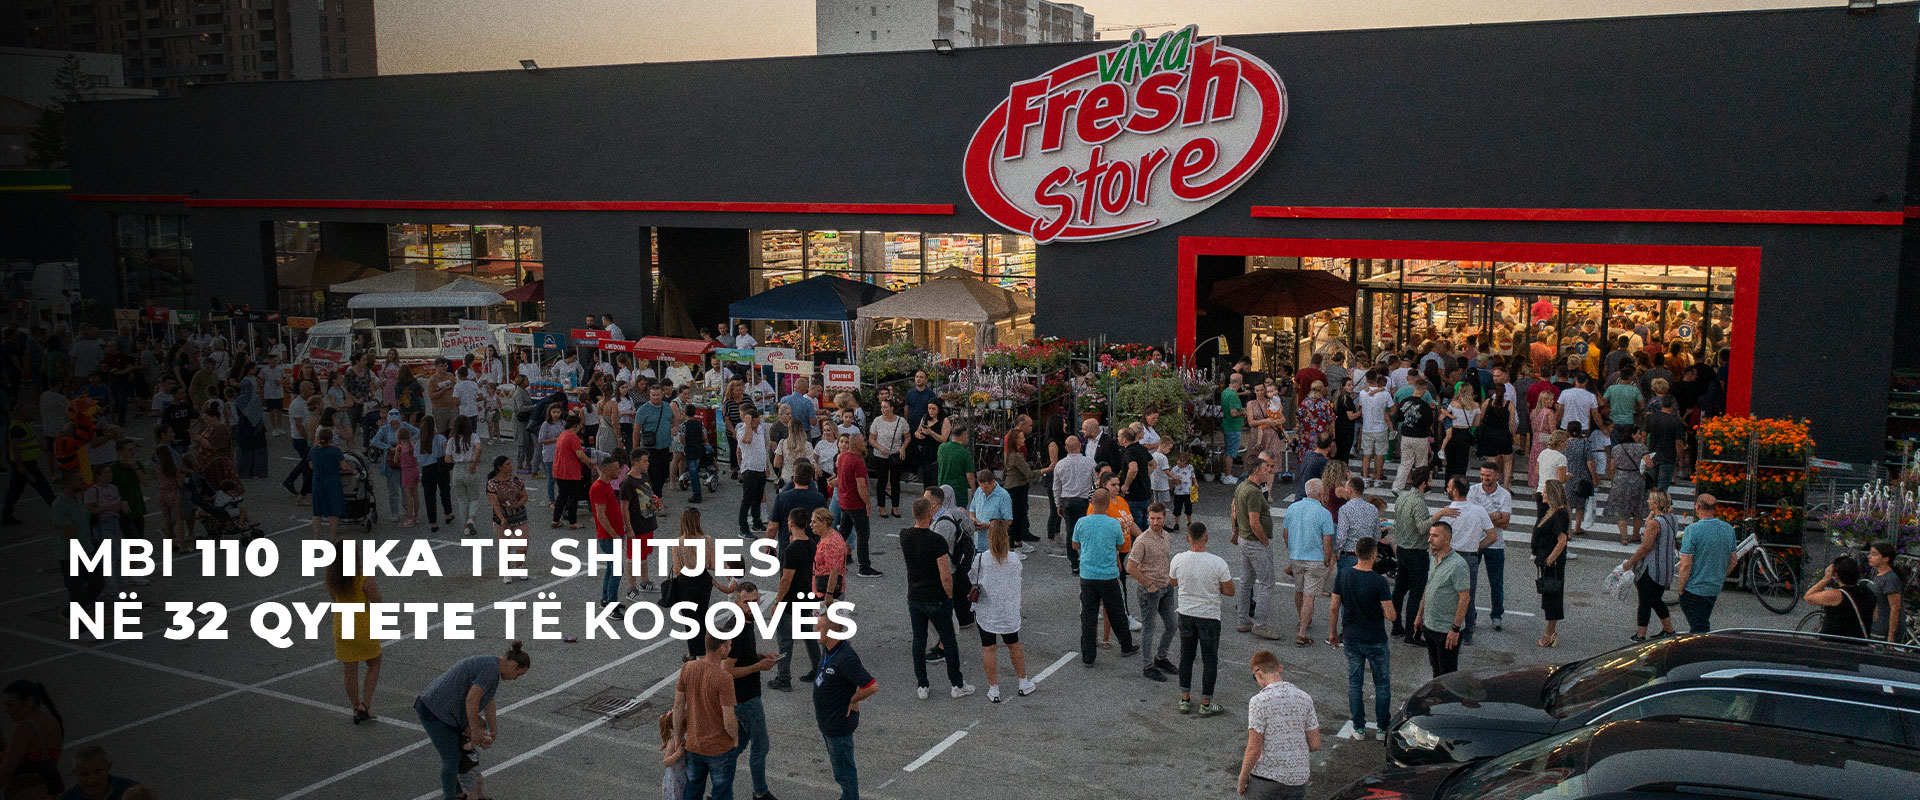 Viva Fresh Store – Përfito më tepër!